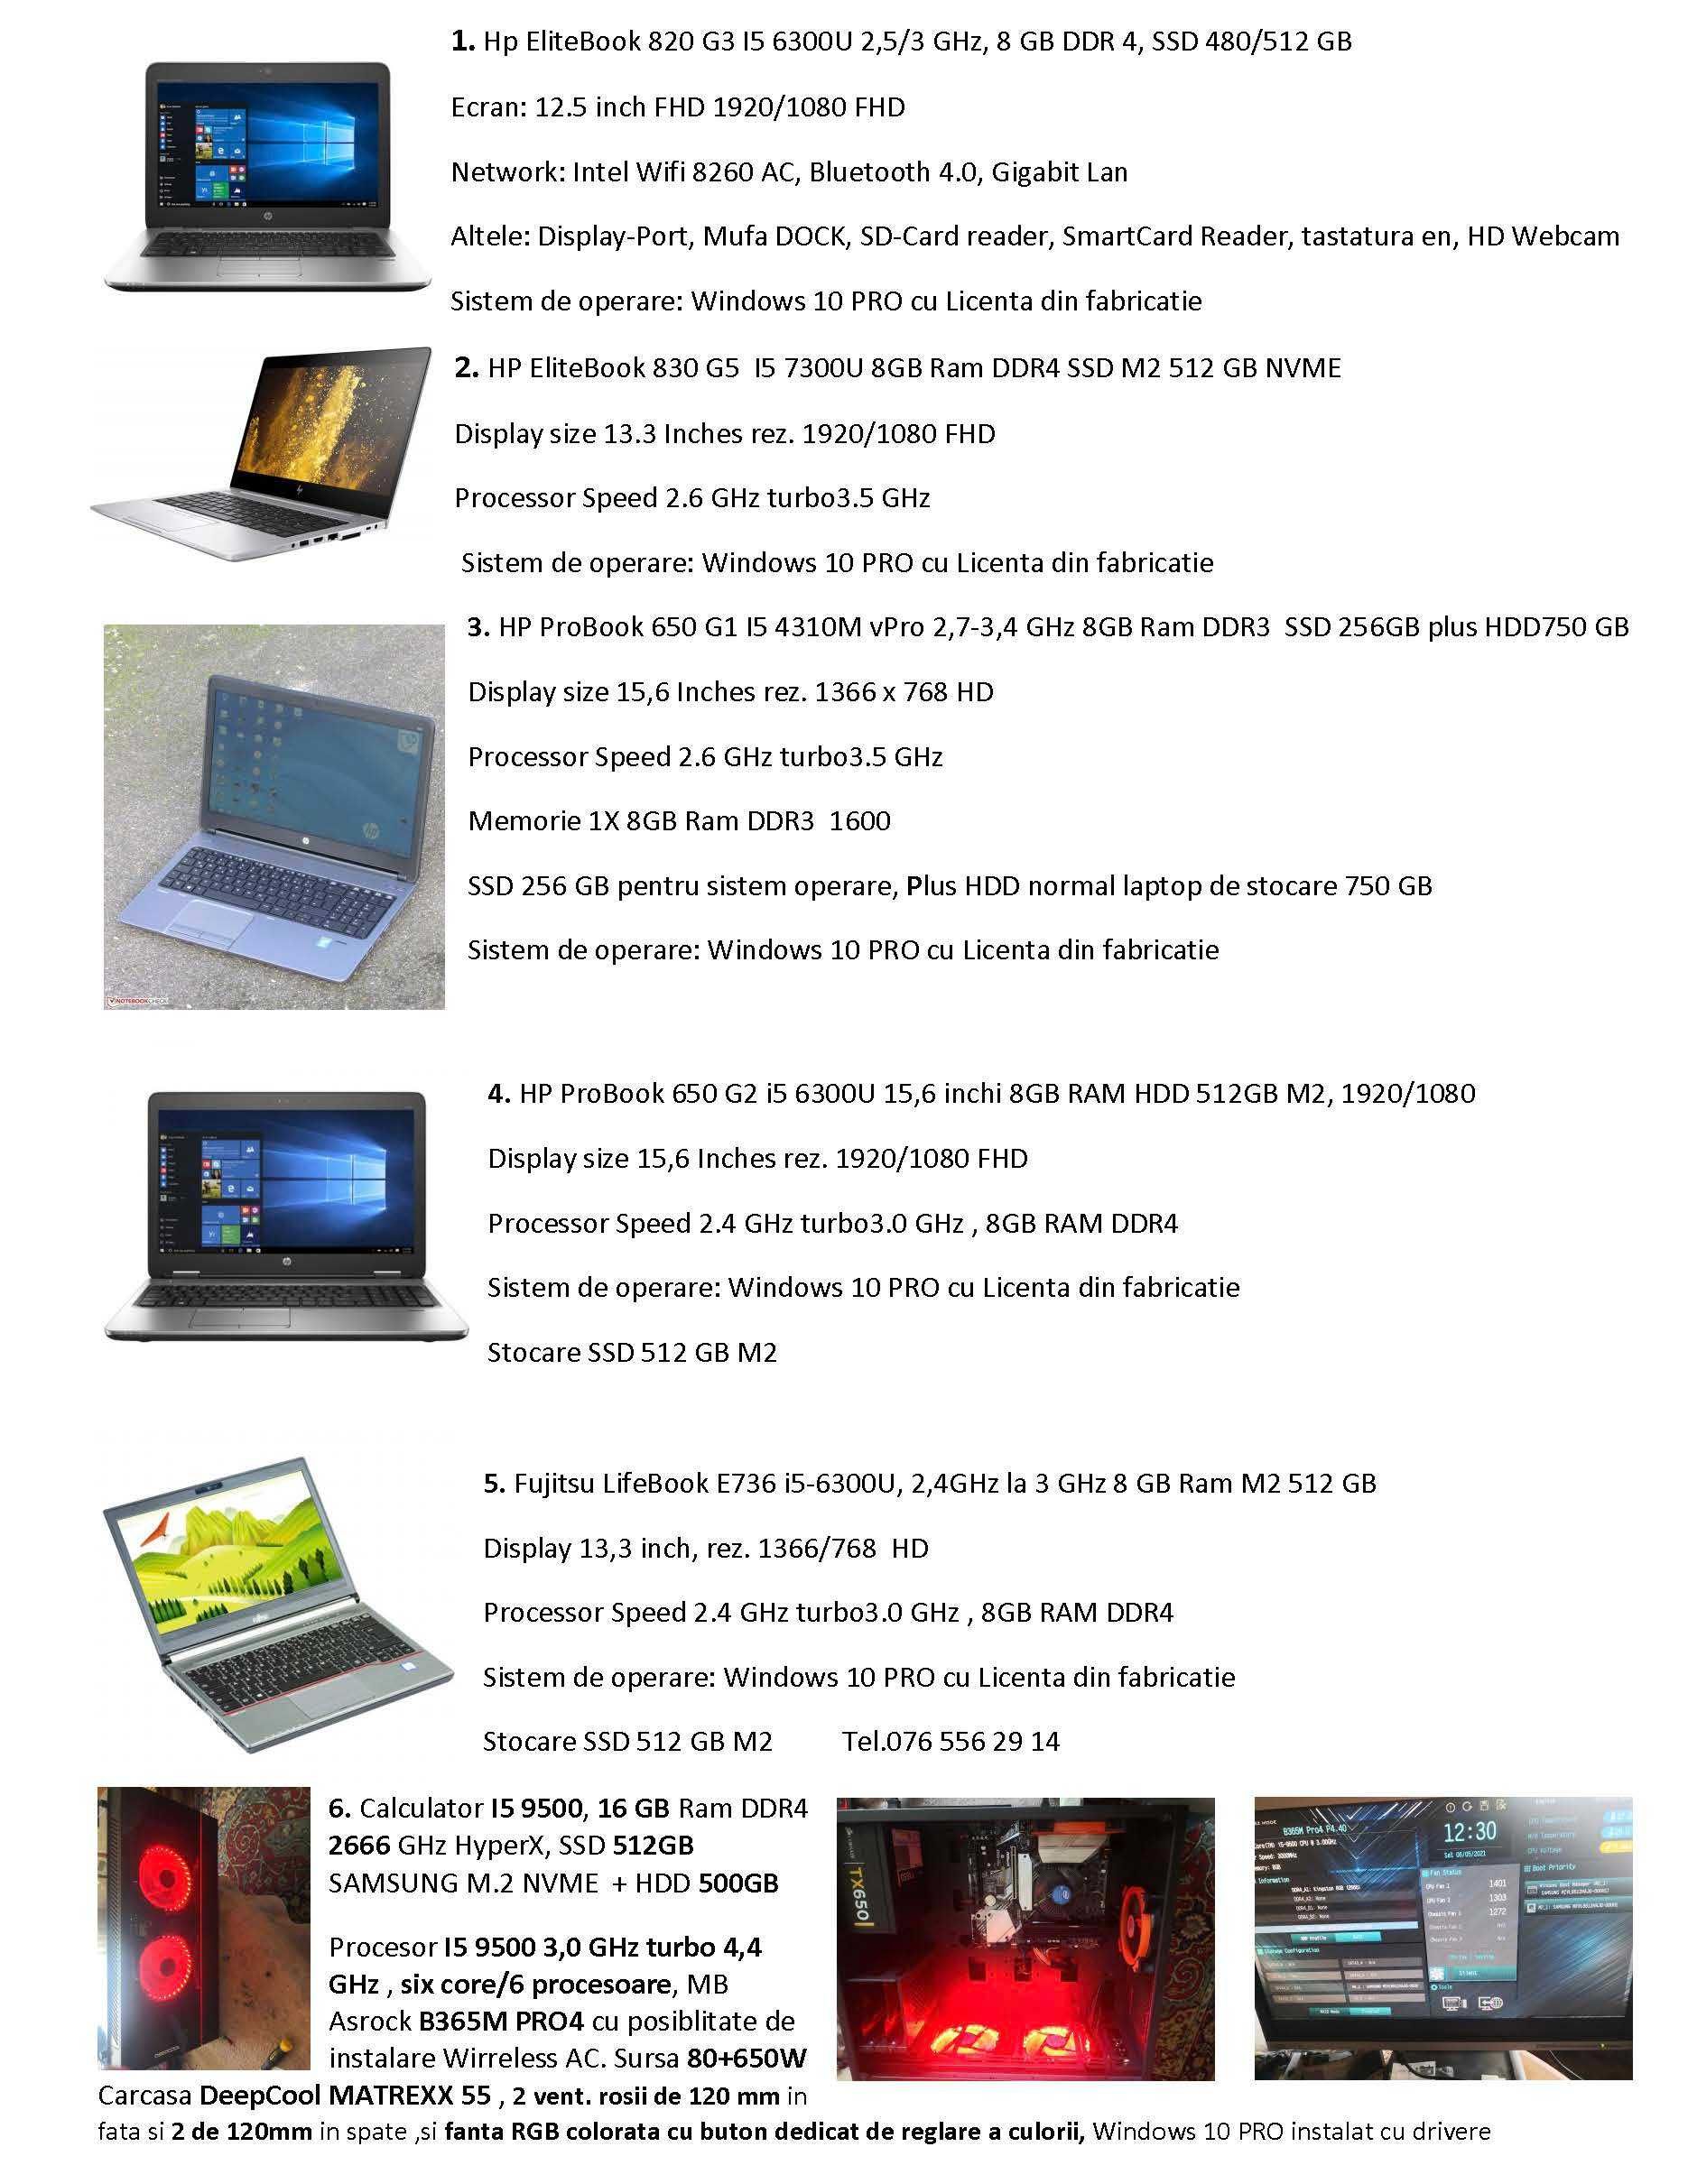 Laptopuri Profesionale I5 6300U pentru scoala 2017, 2018 2019